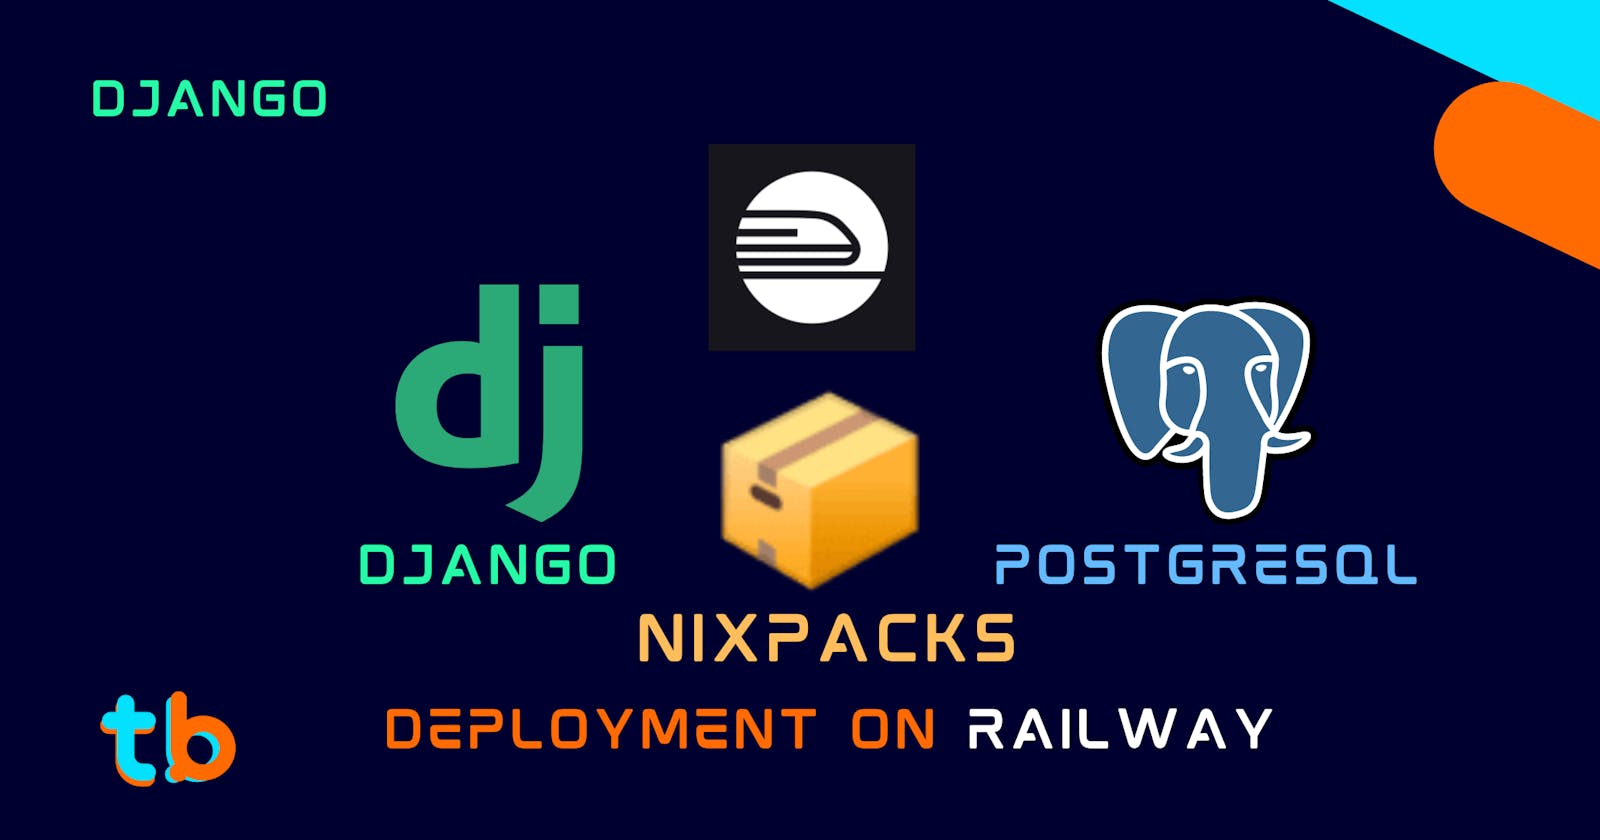 Deploying Django Project with Railway Nixpacks